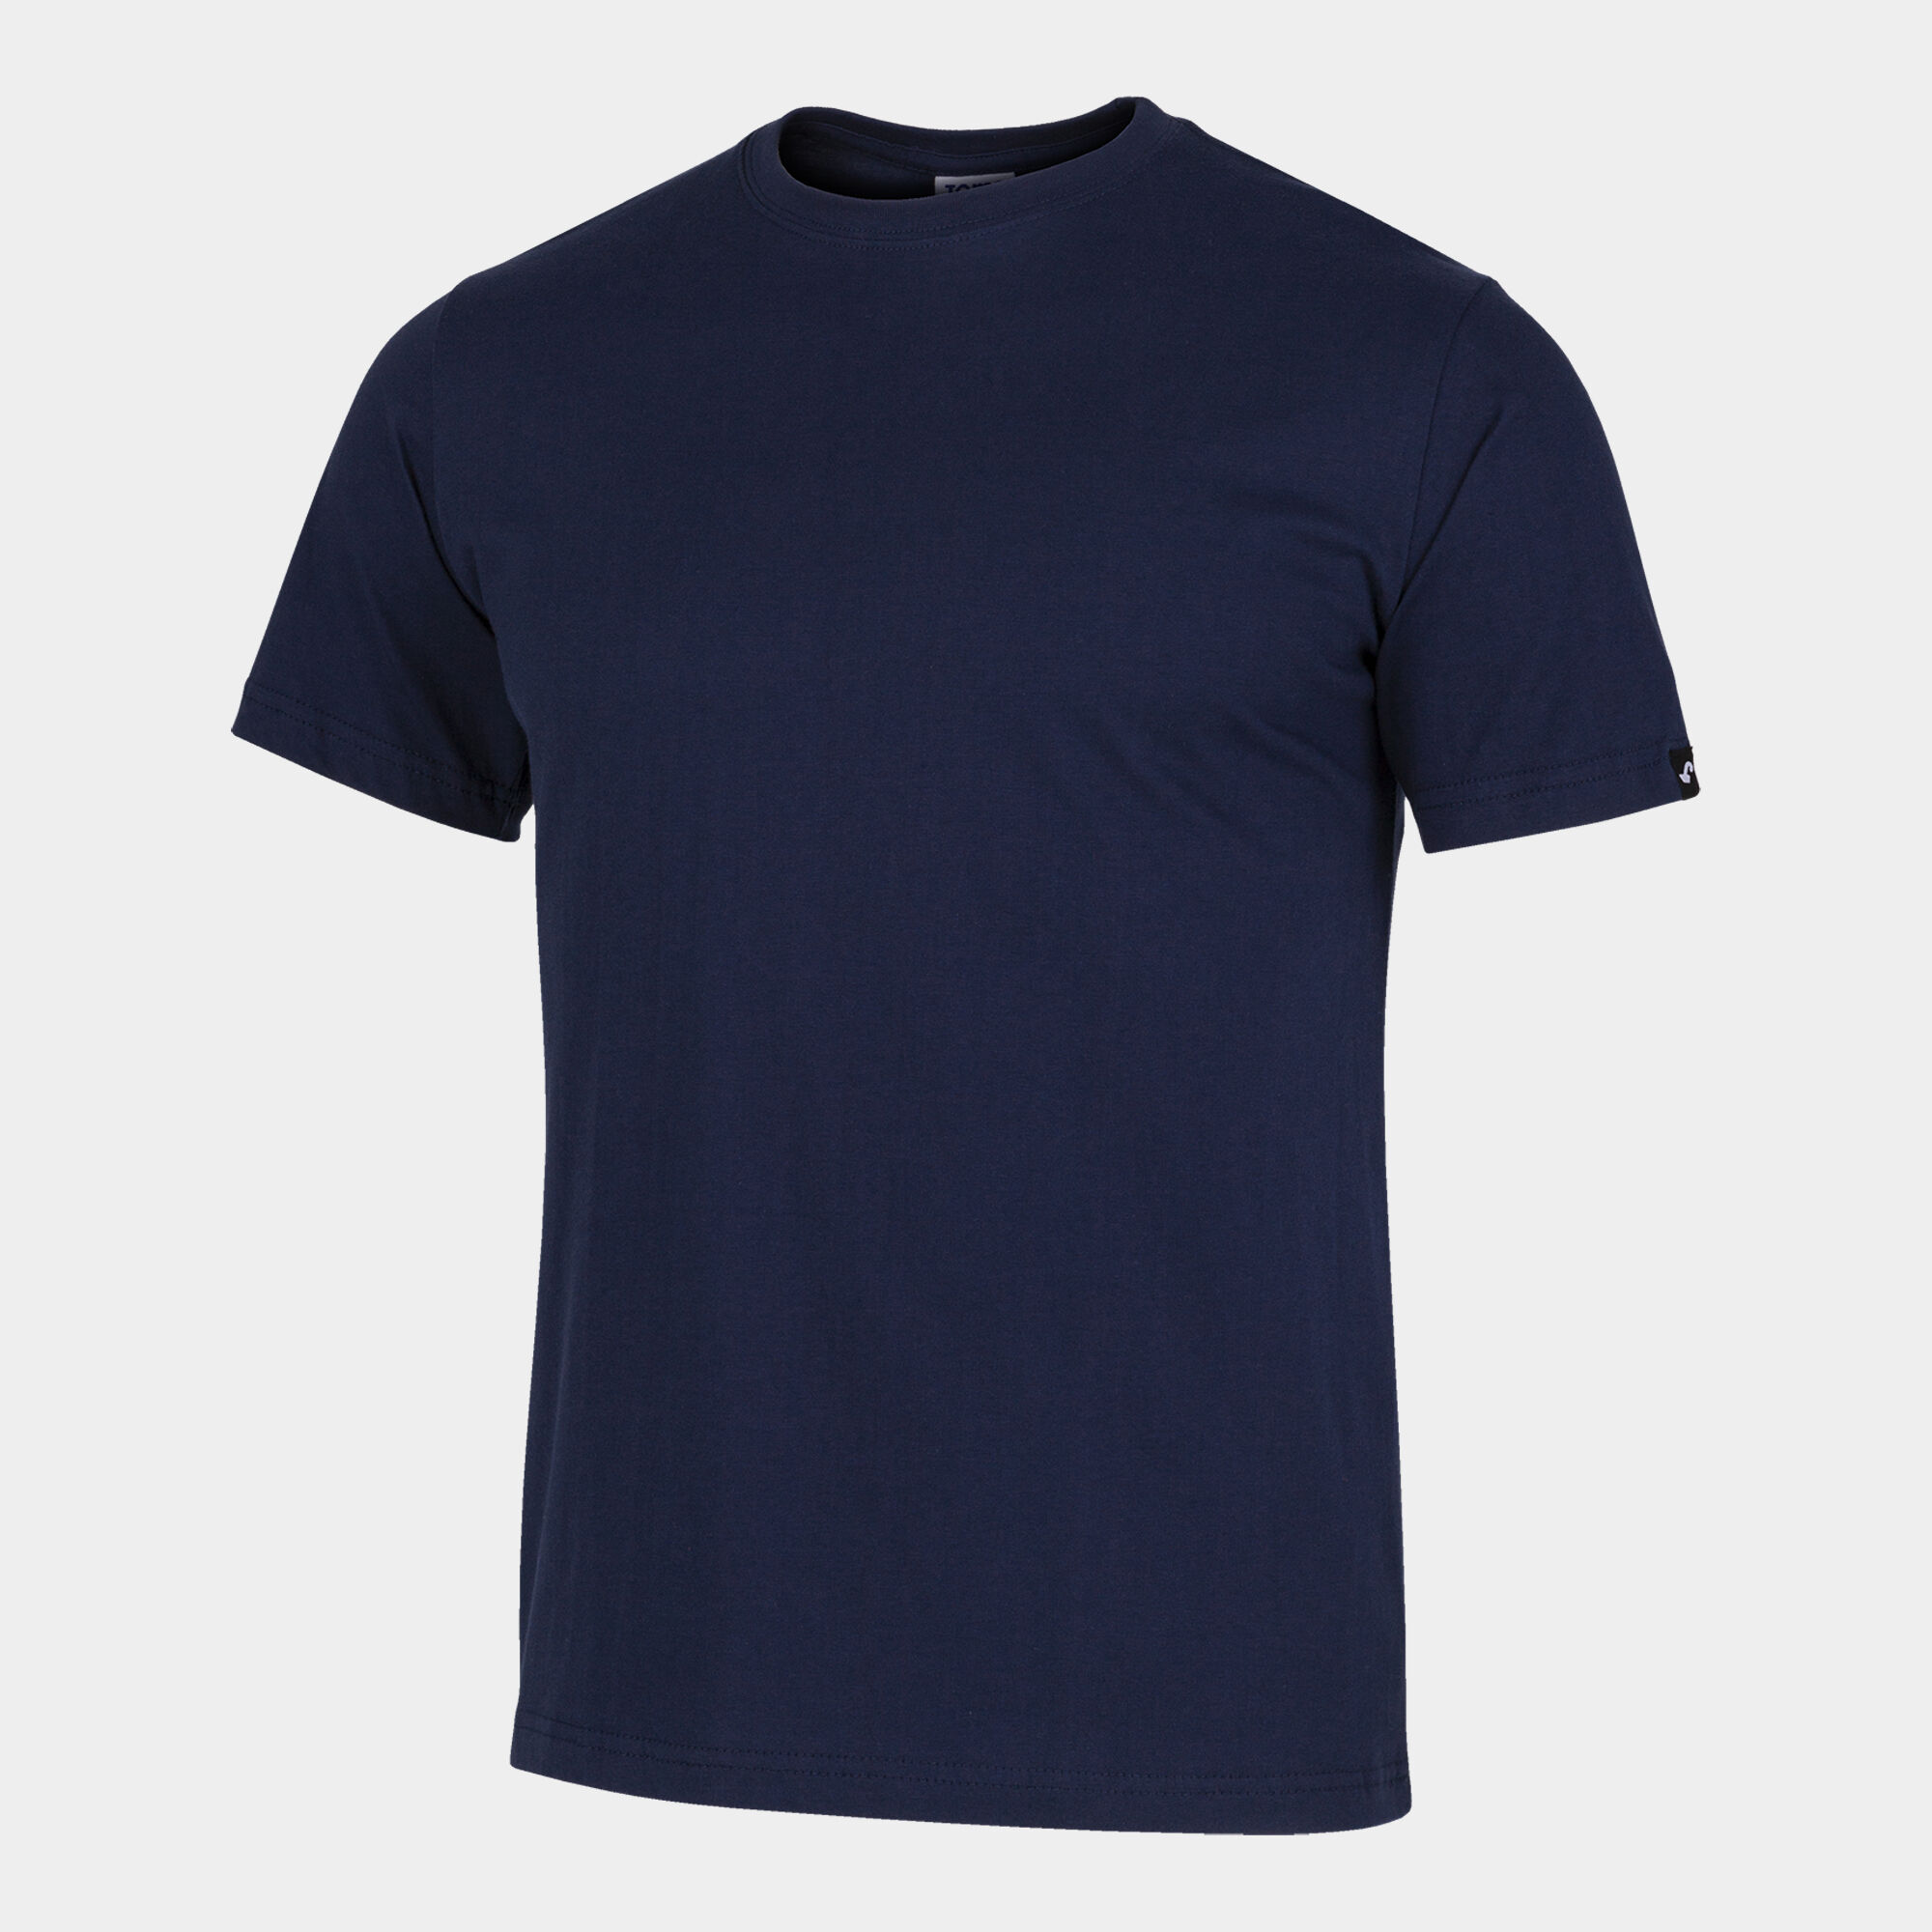 Shirt short sleeve man Desert navy blue